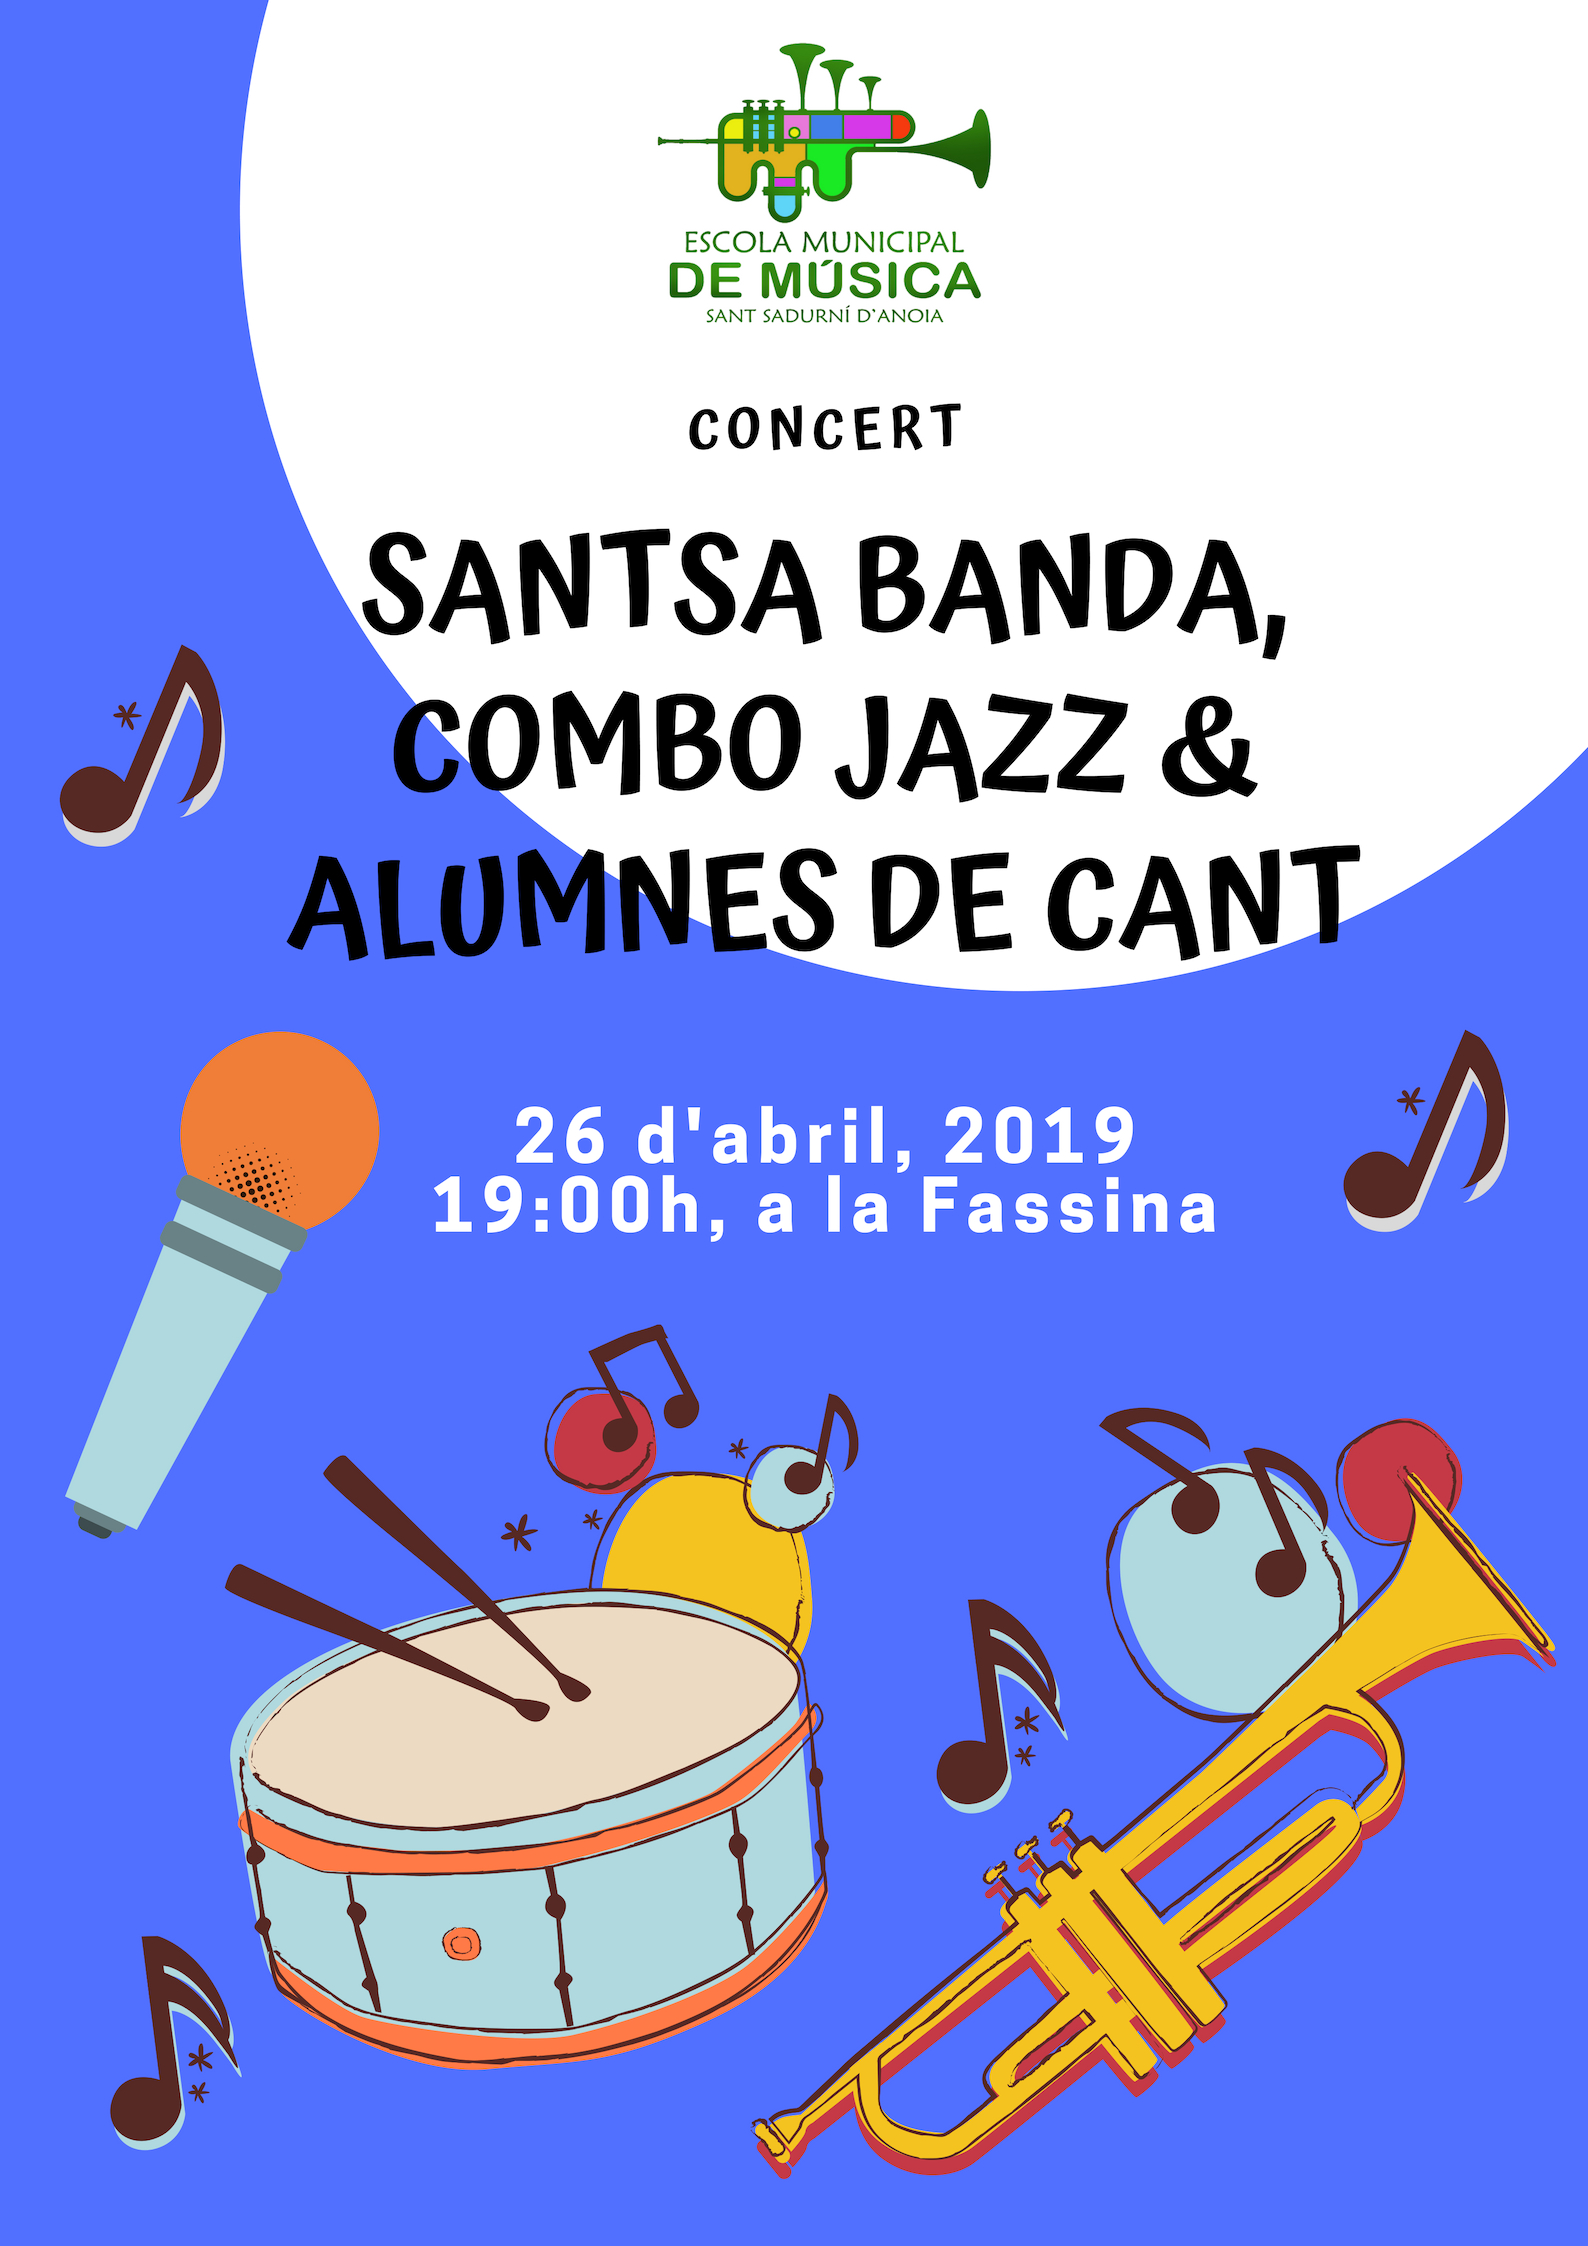 Concert Santsa Banda